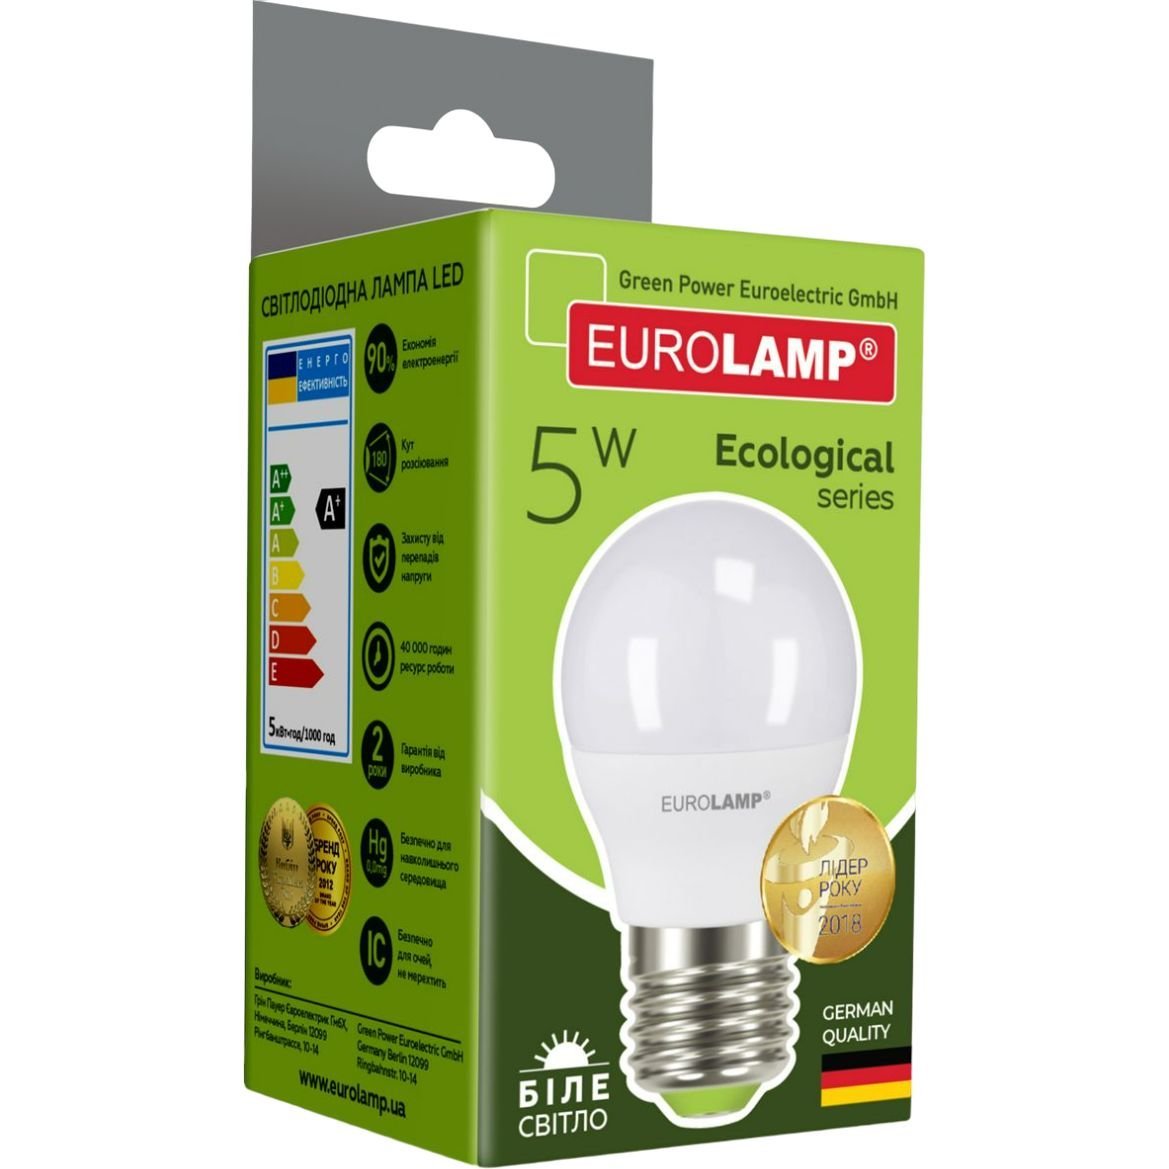 Светодиодная лампа Eurolamp LED Ecological Series, G45, 5W, E27, 4000K (LED-G45-05274(P)) - фото 4